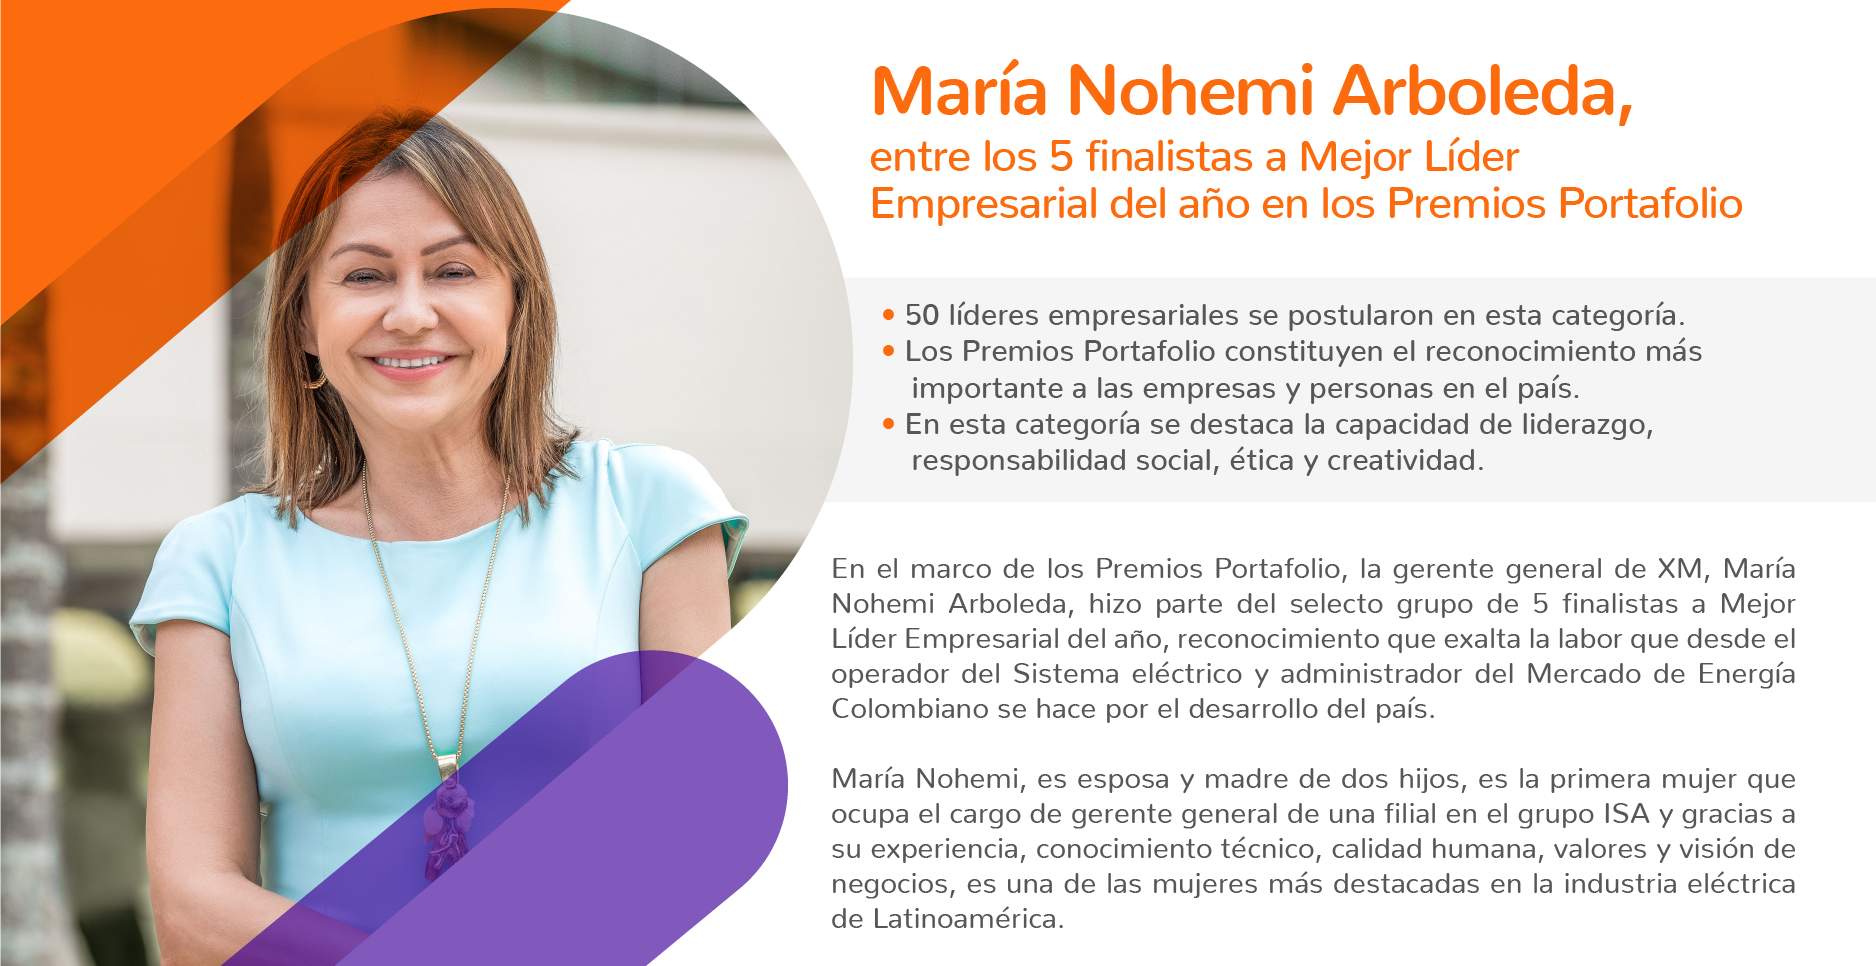 Maria Nohemi Arboleta entre los 5 finalistas a Mejor Líder Empresarial